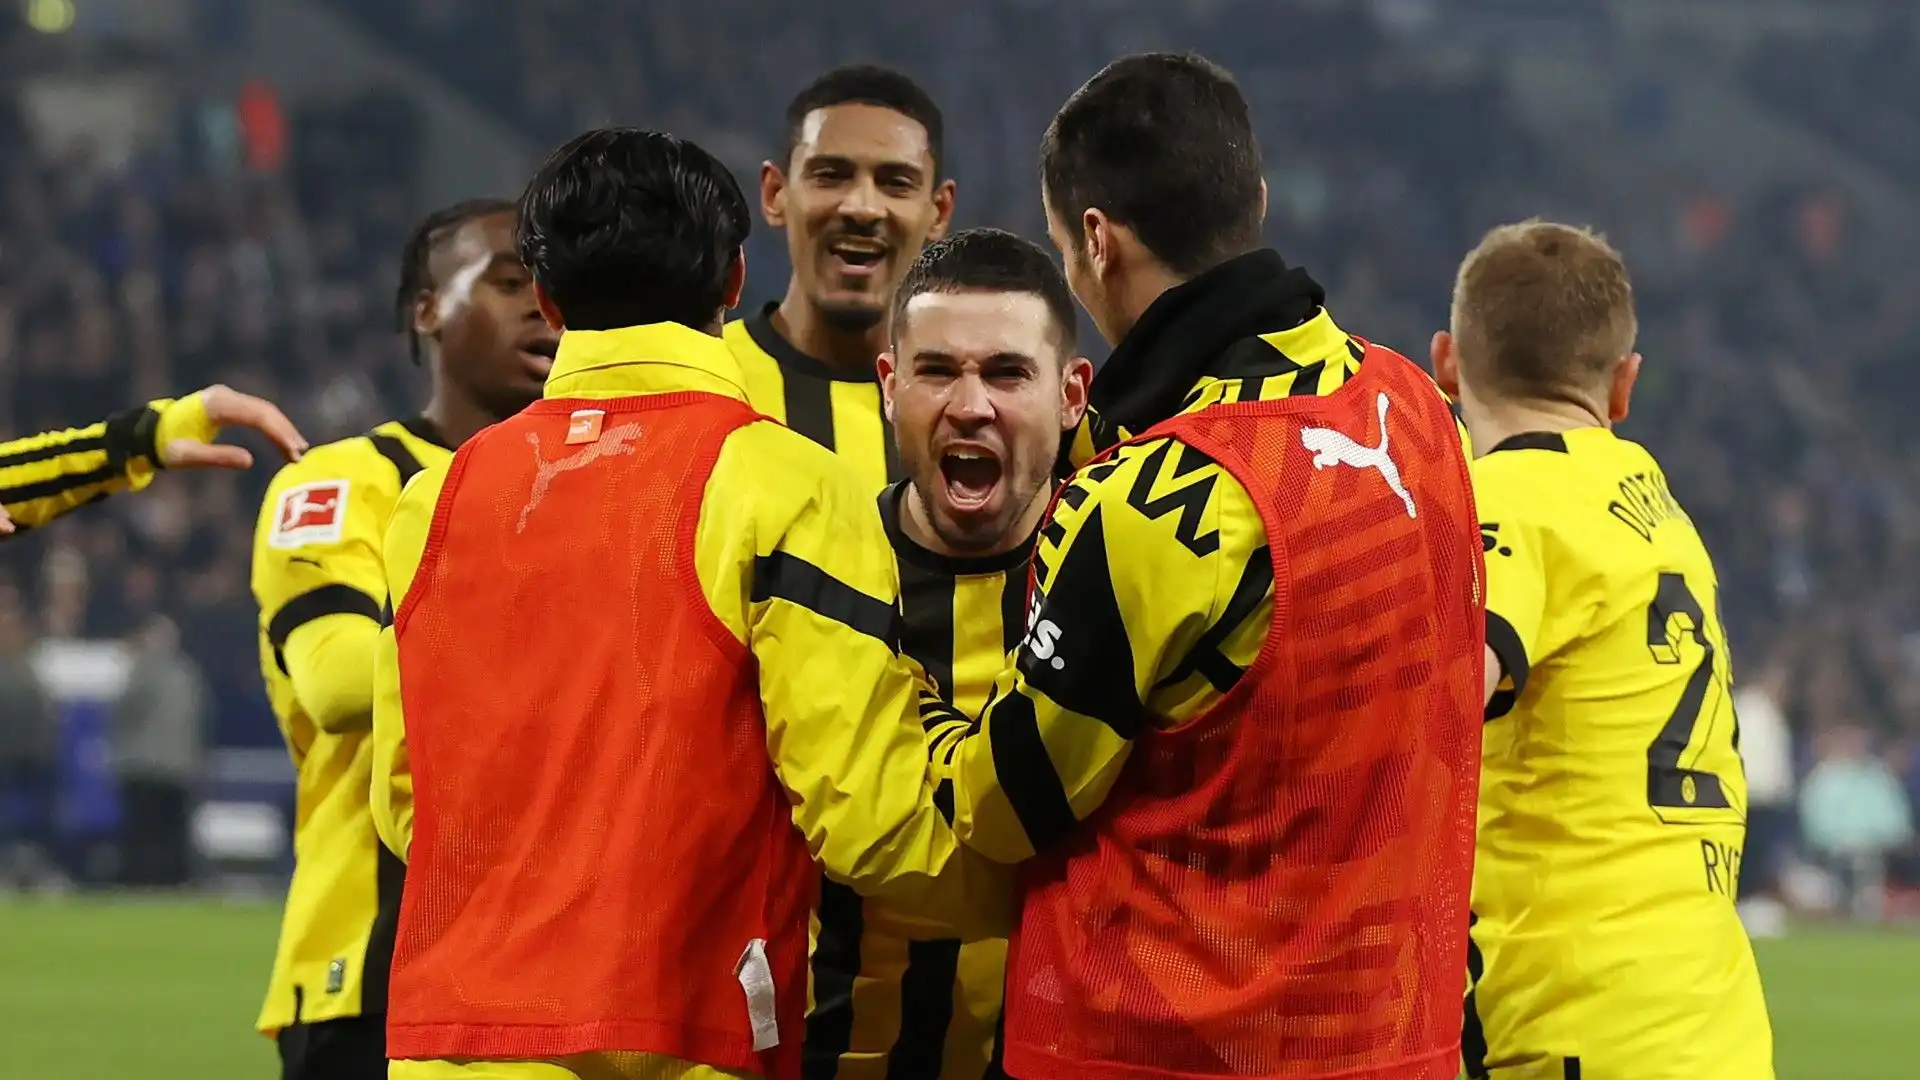 Guerreiro ha segnato il secondo gol per il Borussia Dortmund